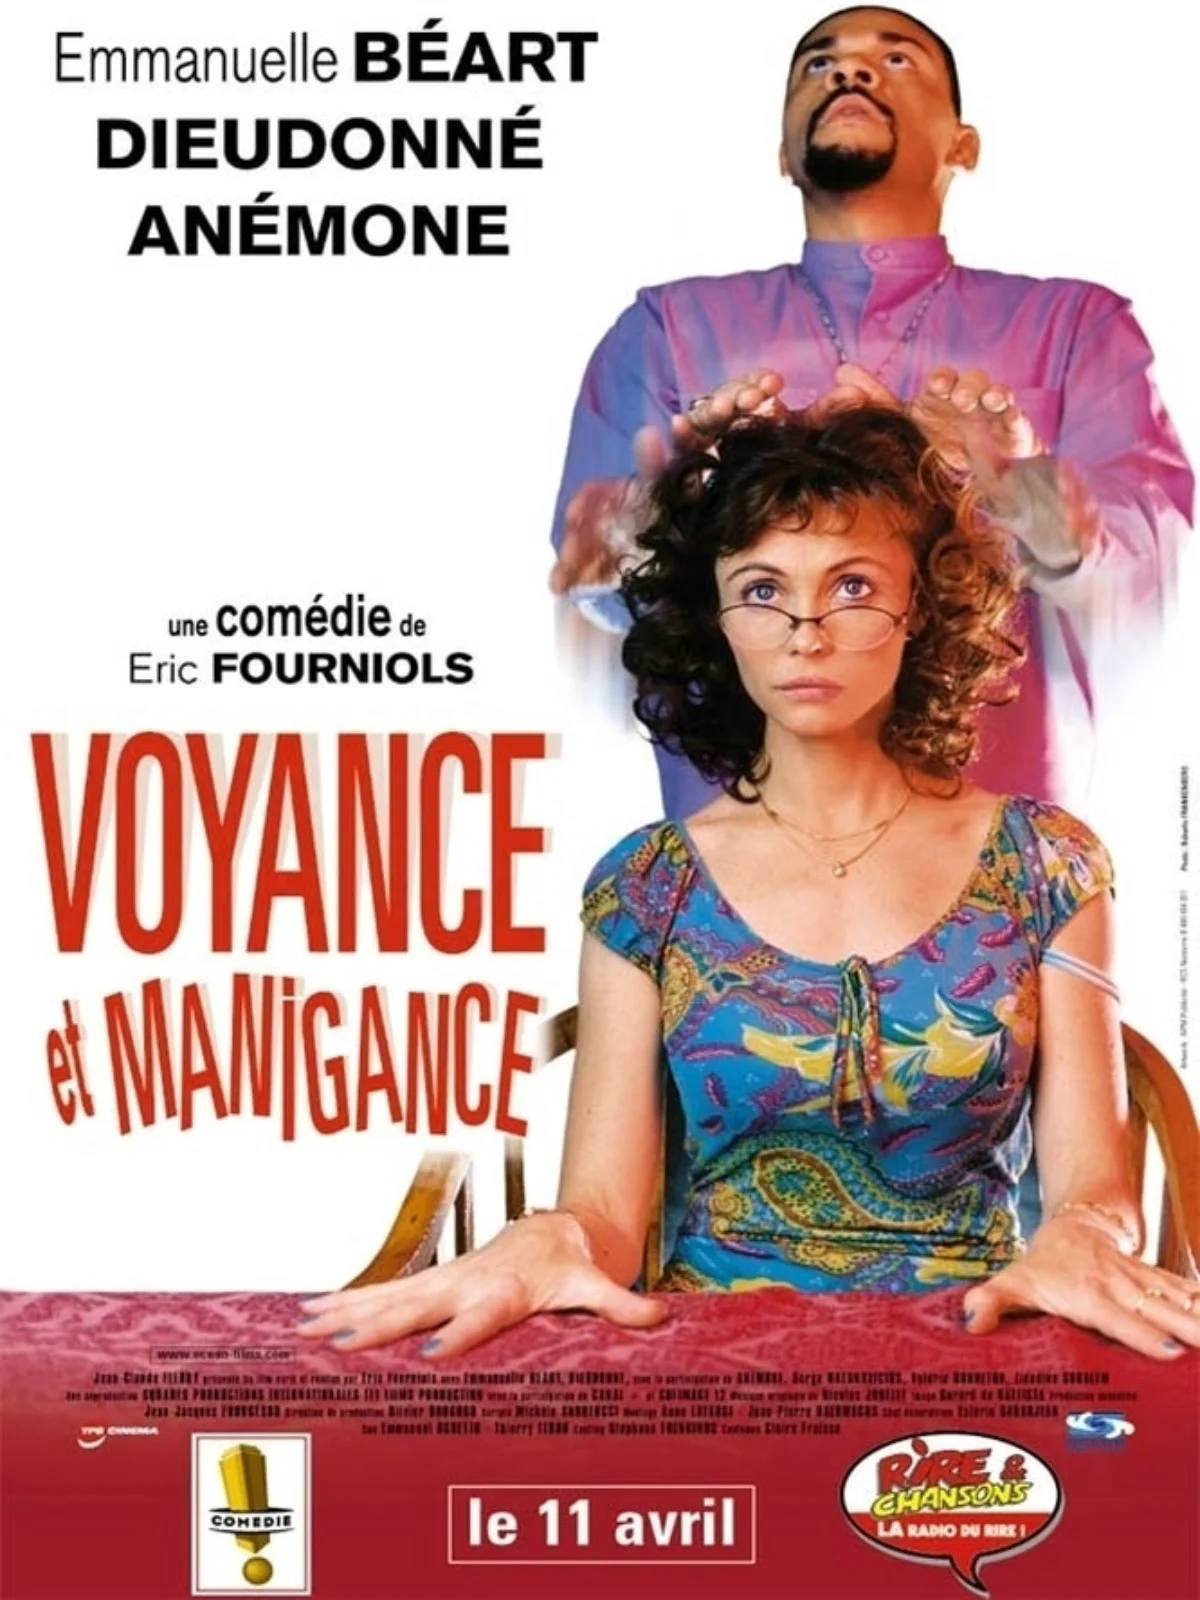 Voyance & Manigance (Dieudo 2001)